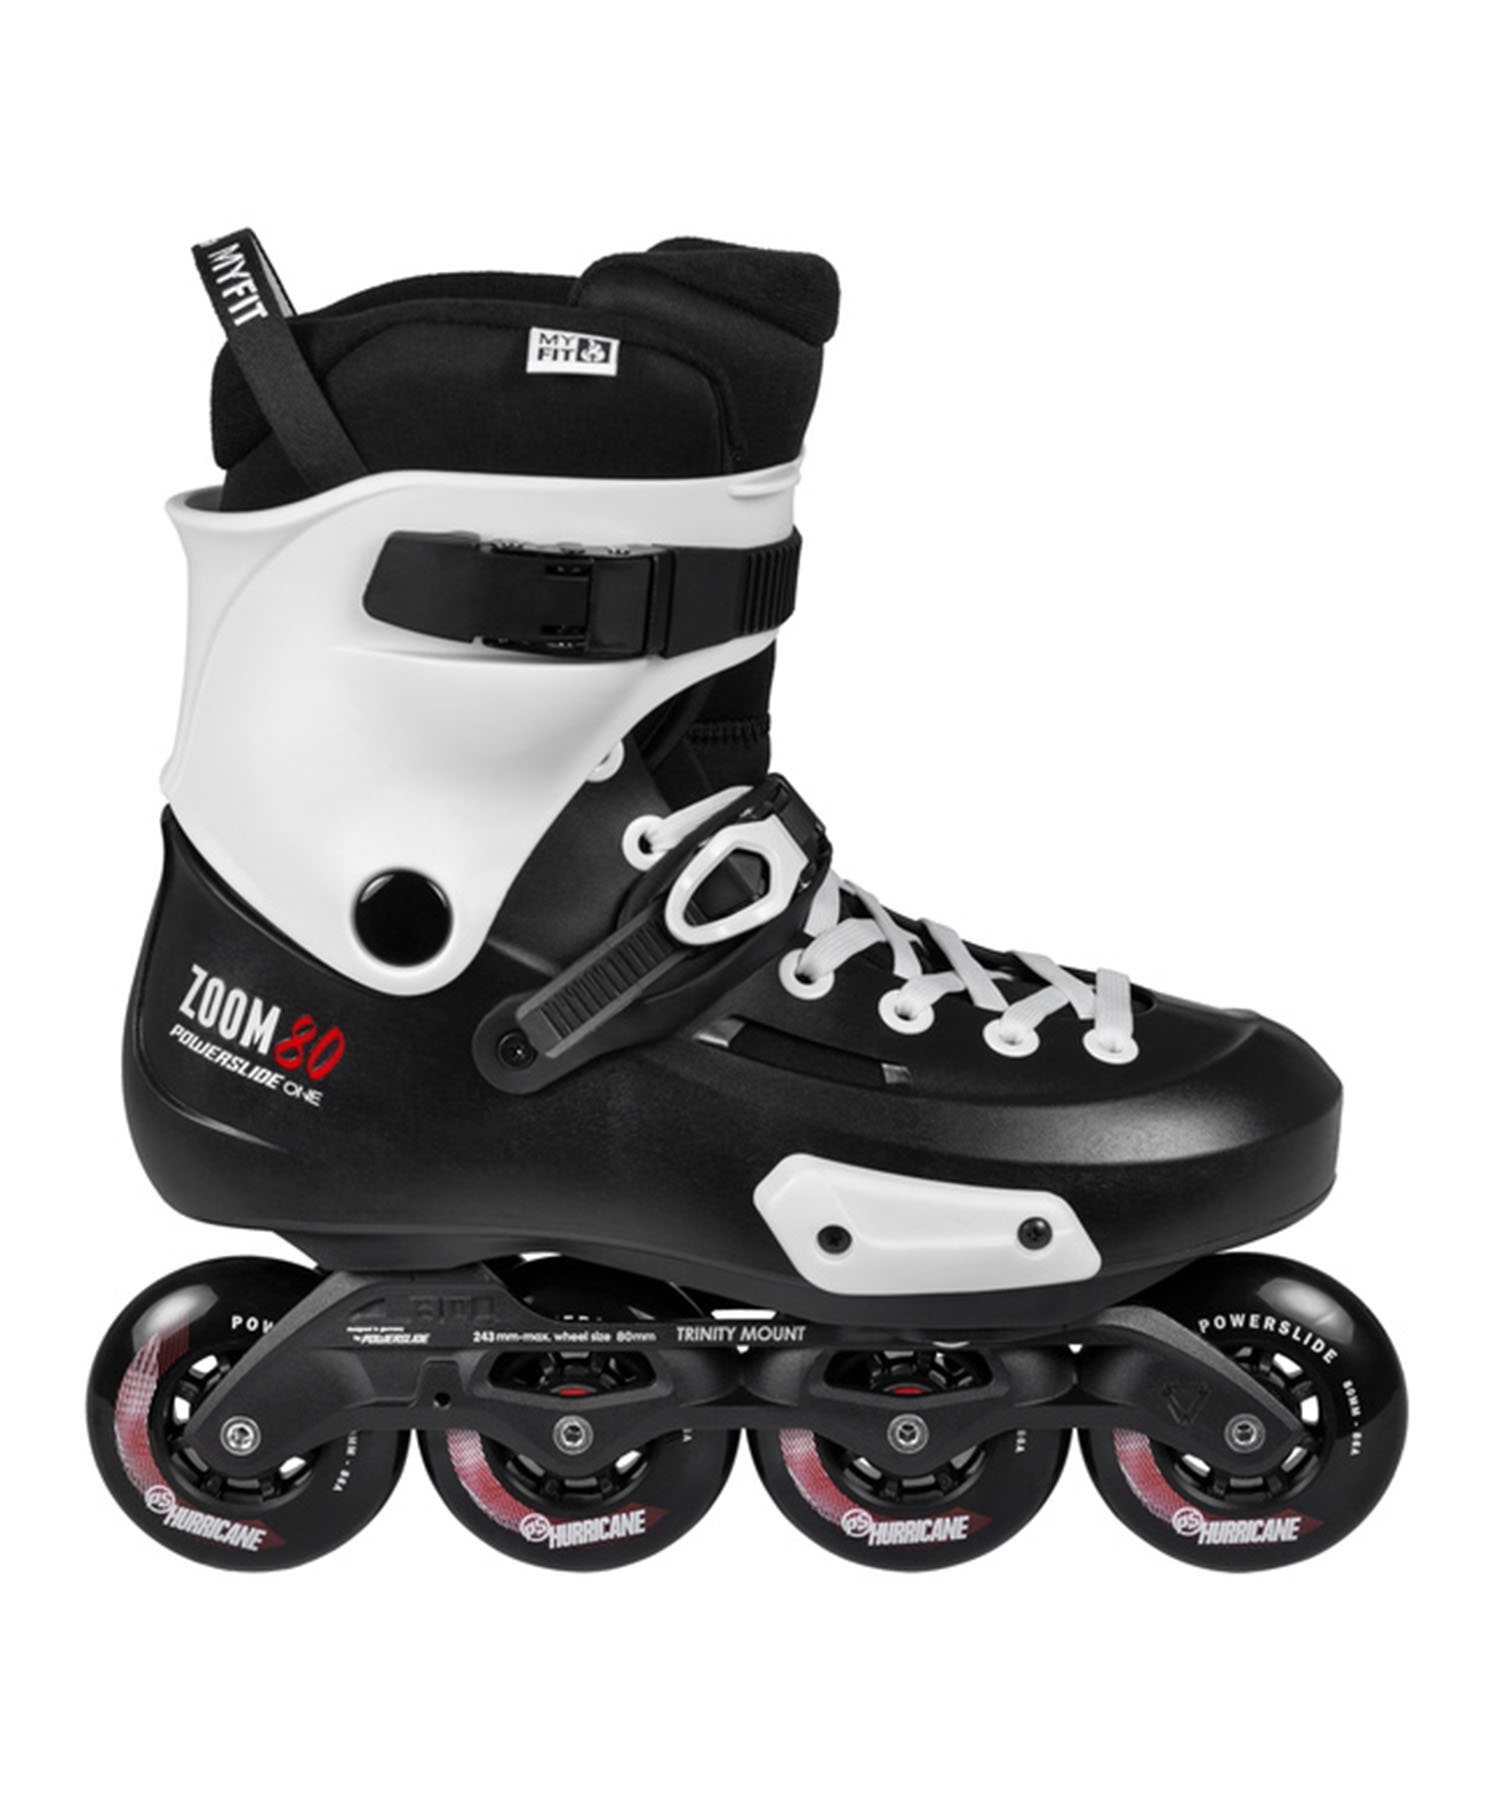 インラインスケート POWERSLIDE パワースライド Urban skate Zoom Pro Black 80 PS880237(BK-26.5cm)